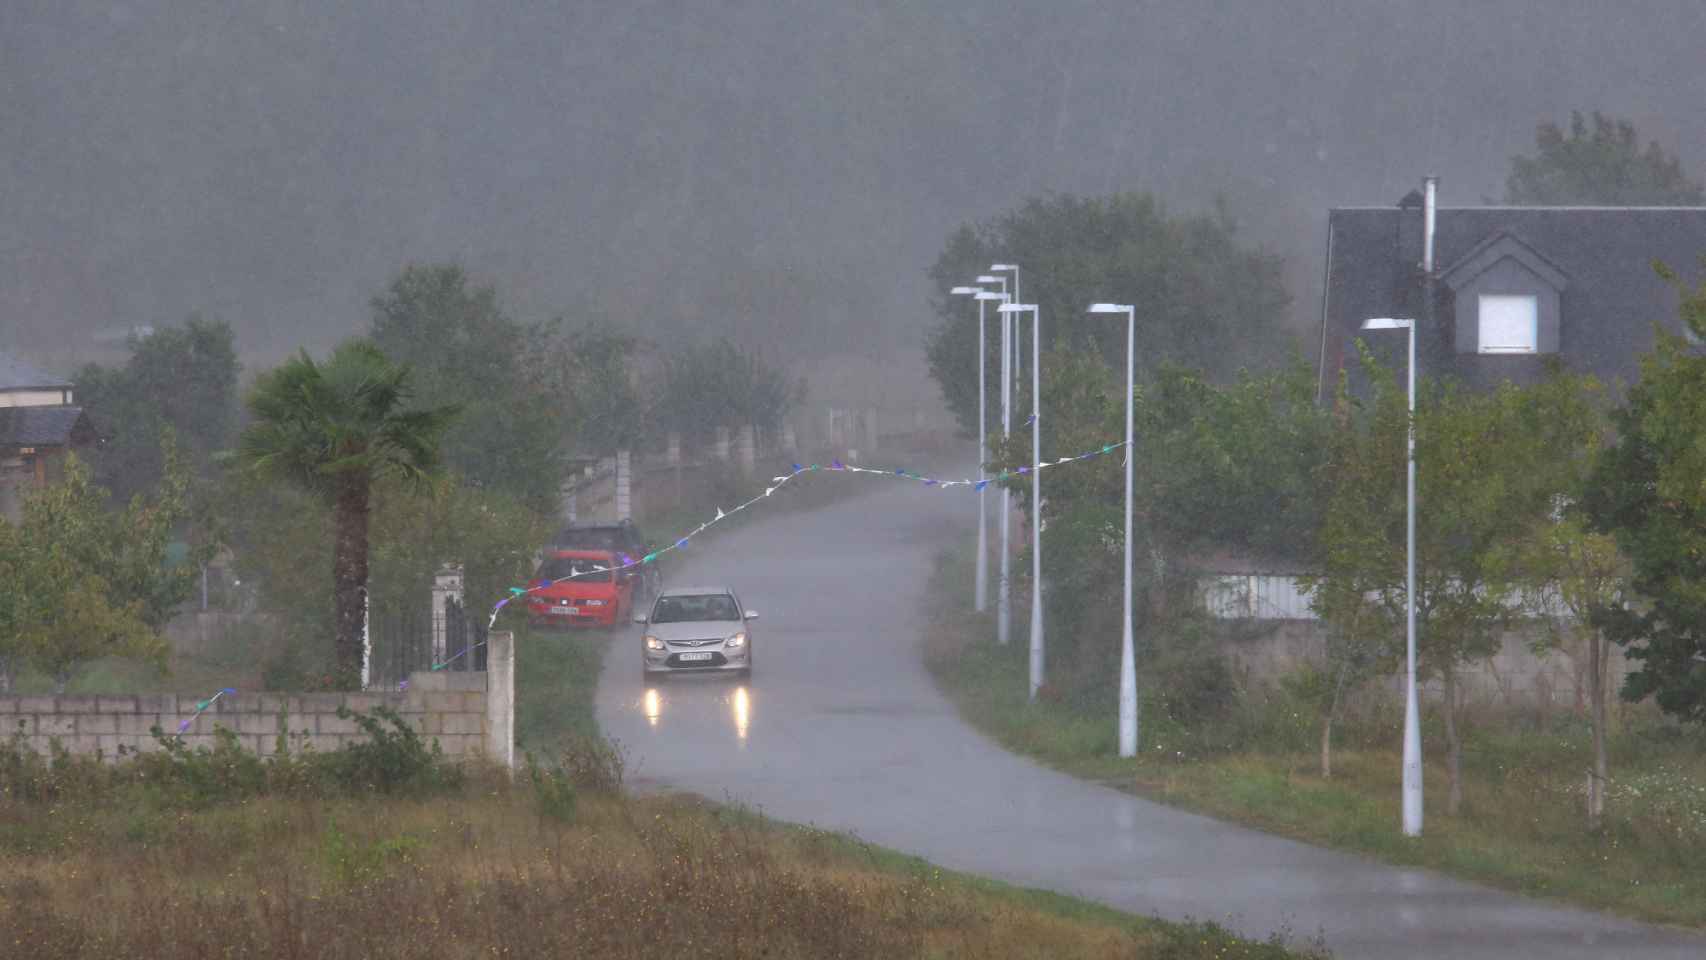 Imagen de una tormenta en Castilla y León.